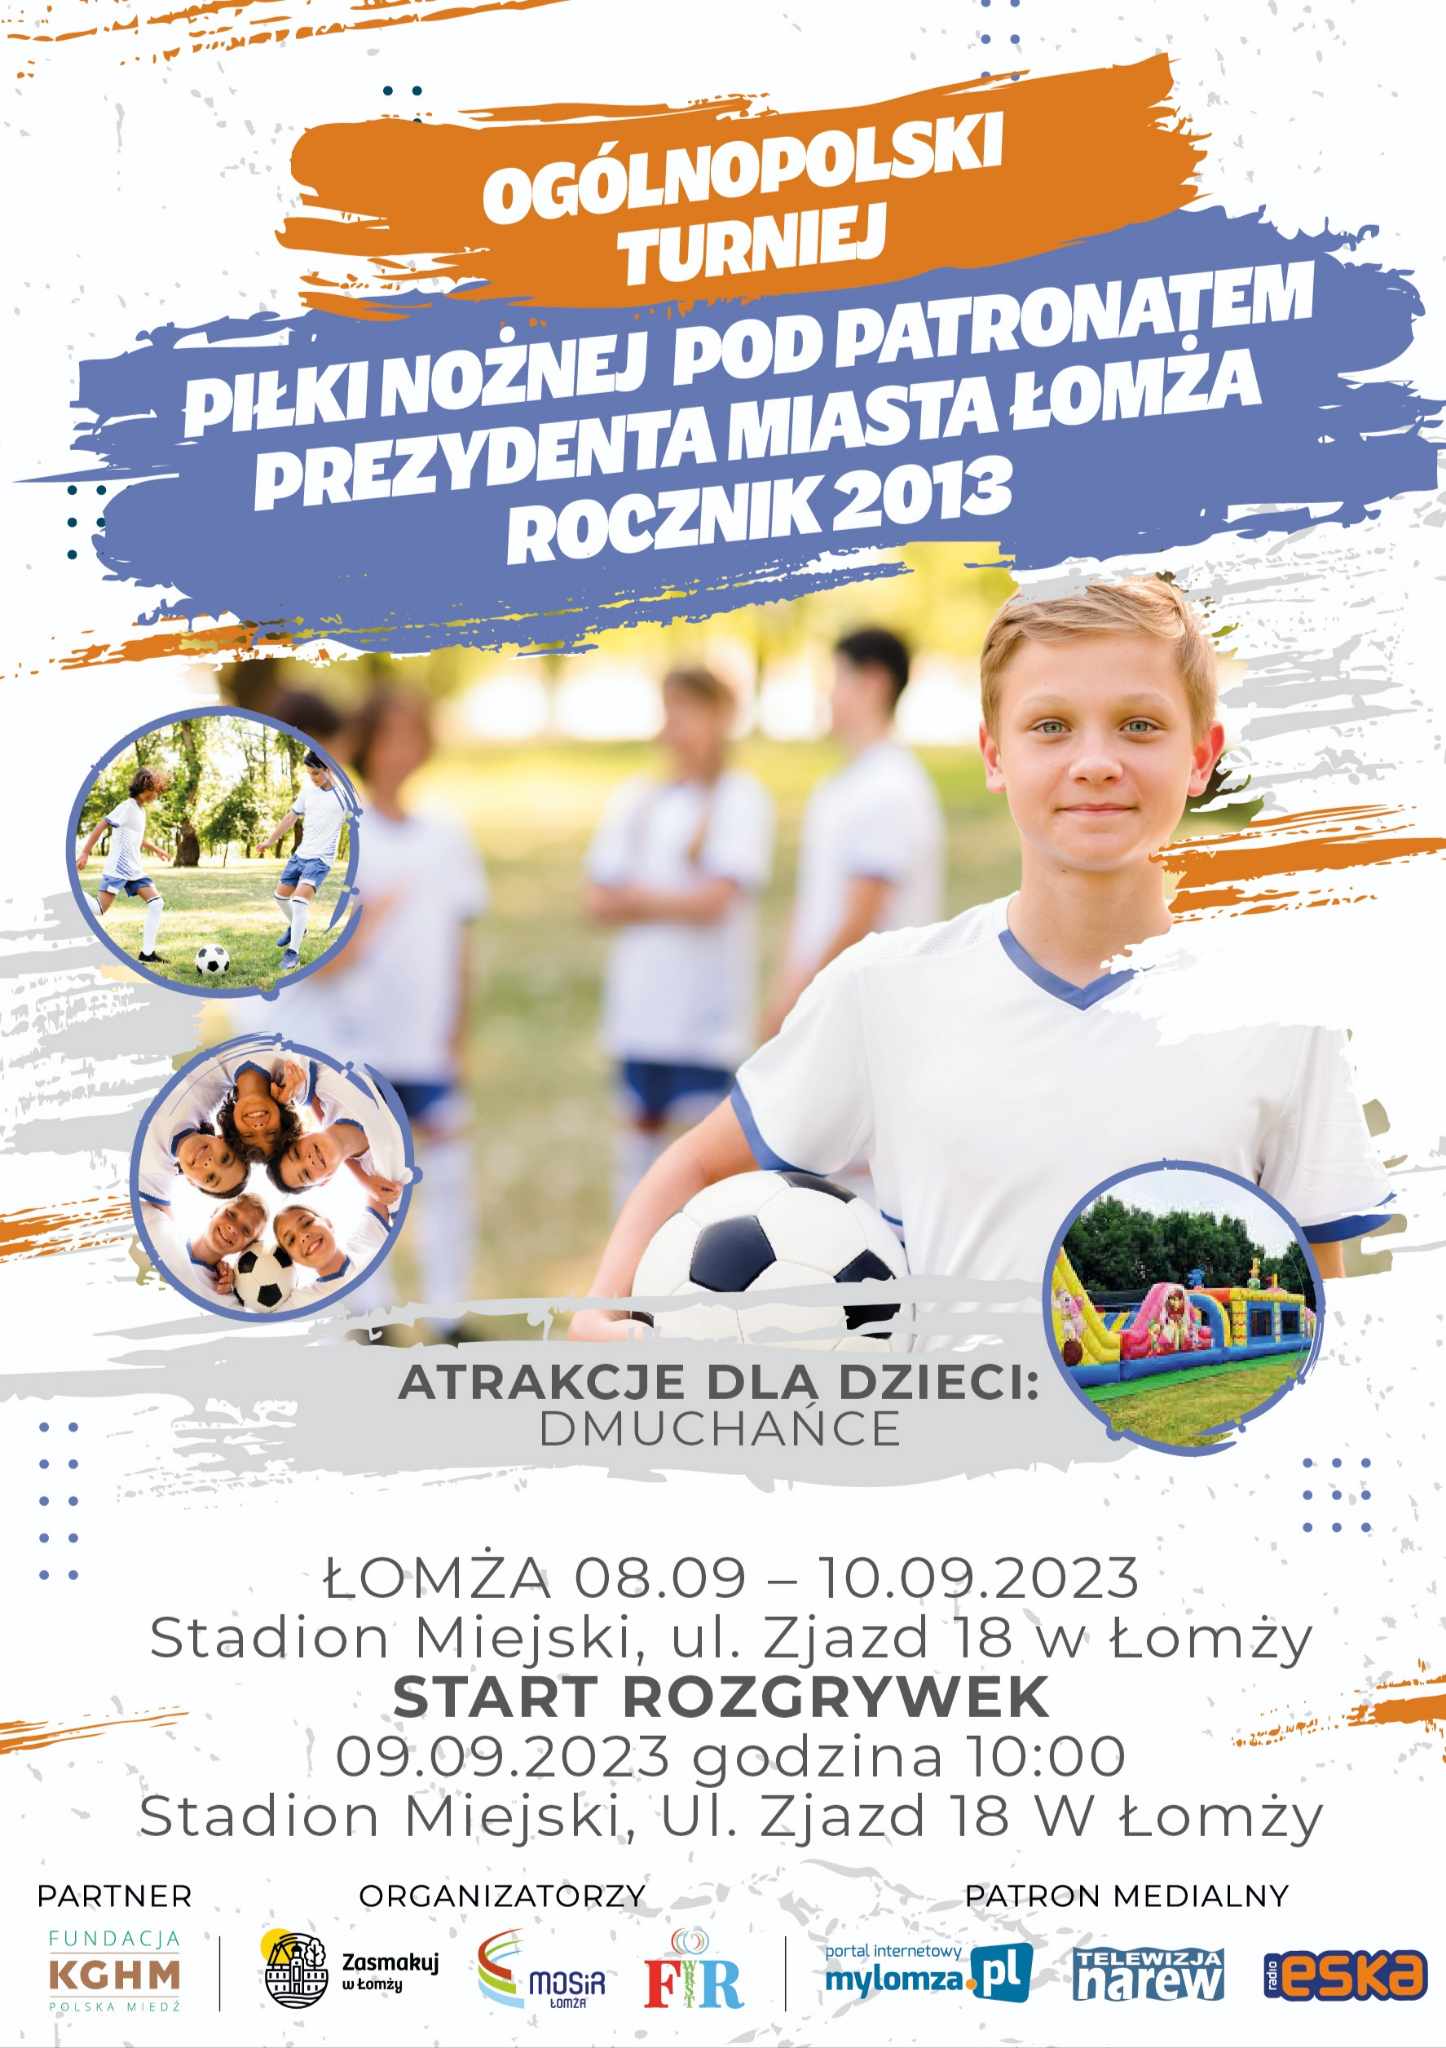 plakat promujący turniej piłki nożnej,  zdjęcie chłopca z piłką, w tle trzy osoby